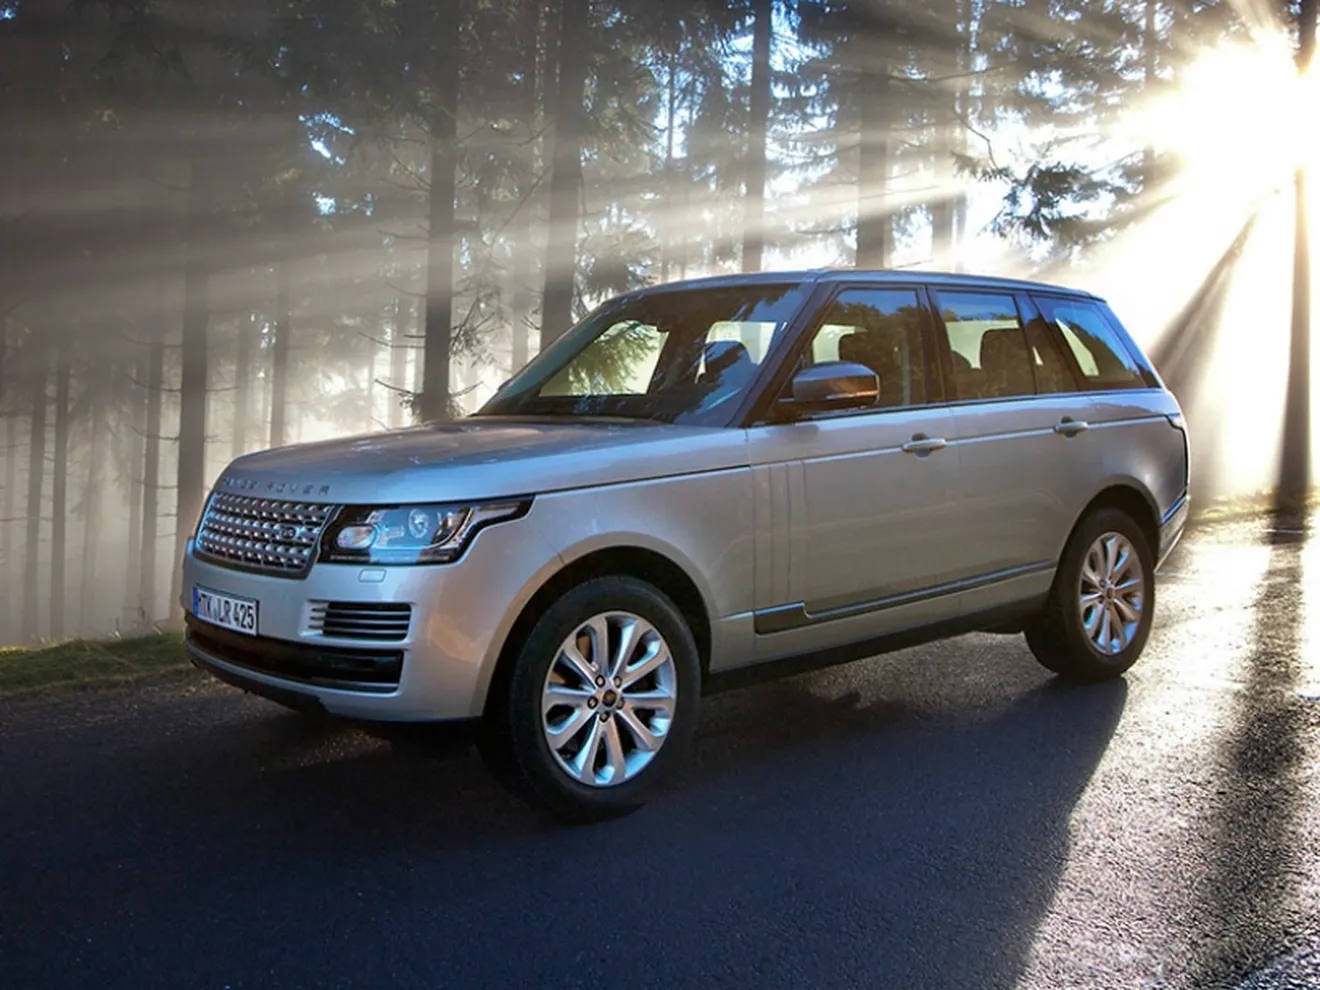 Range Rover y Range Rover Sport 2015, precios oficiales para España